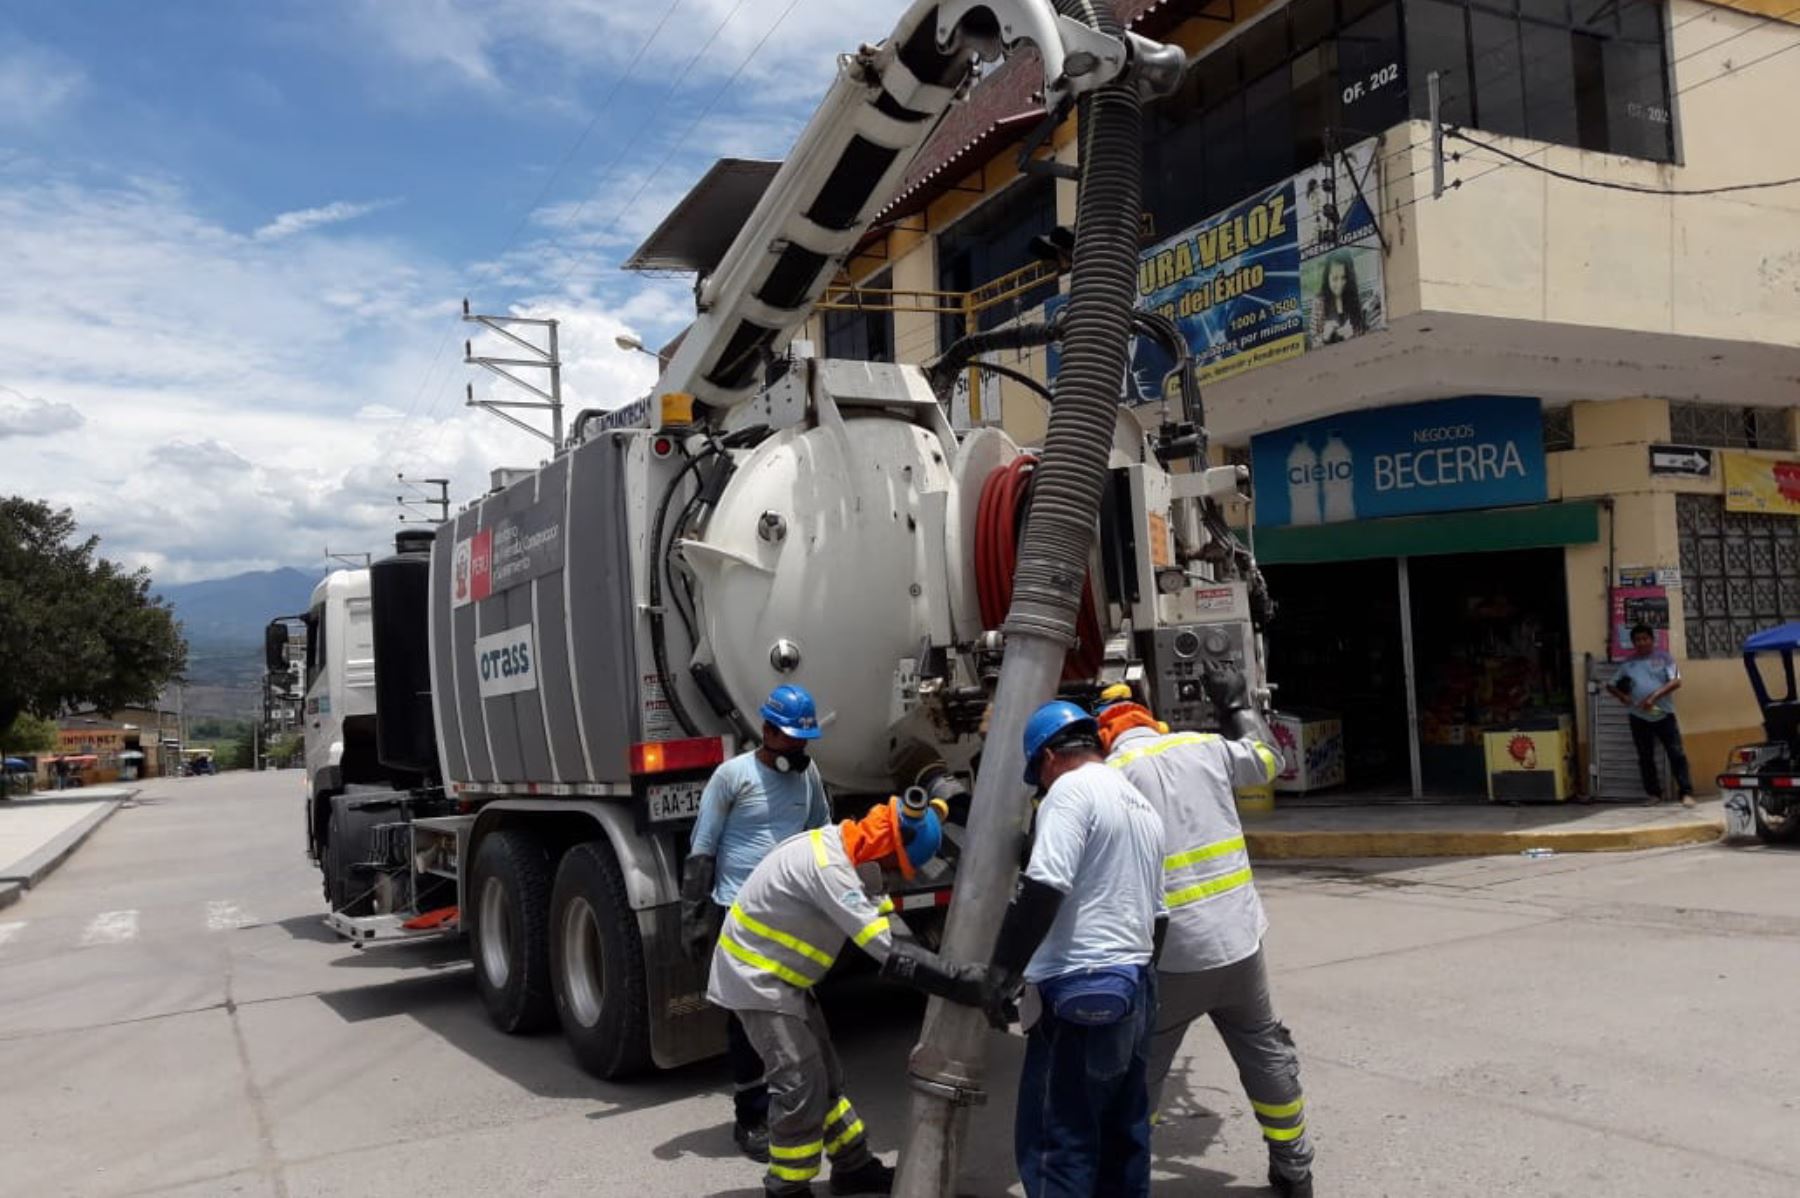 Técnicos de Operación Alcantarillado limpian las redes de desagüe de la ciudad de Bagua Grande,  región Amazonas, para cautelar la salud pública.